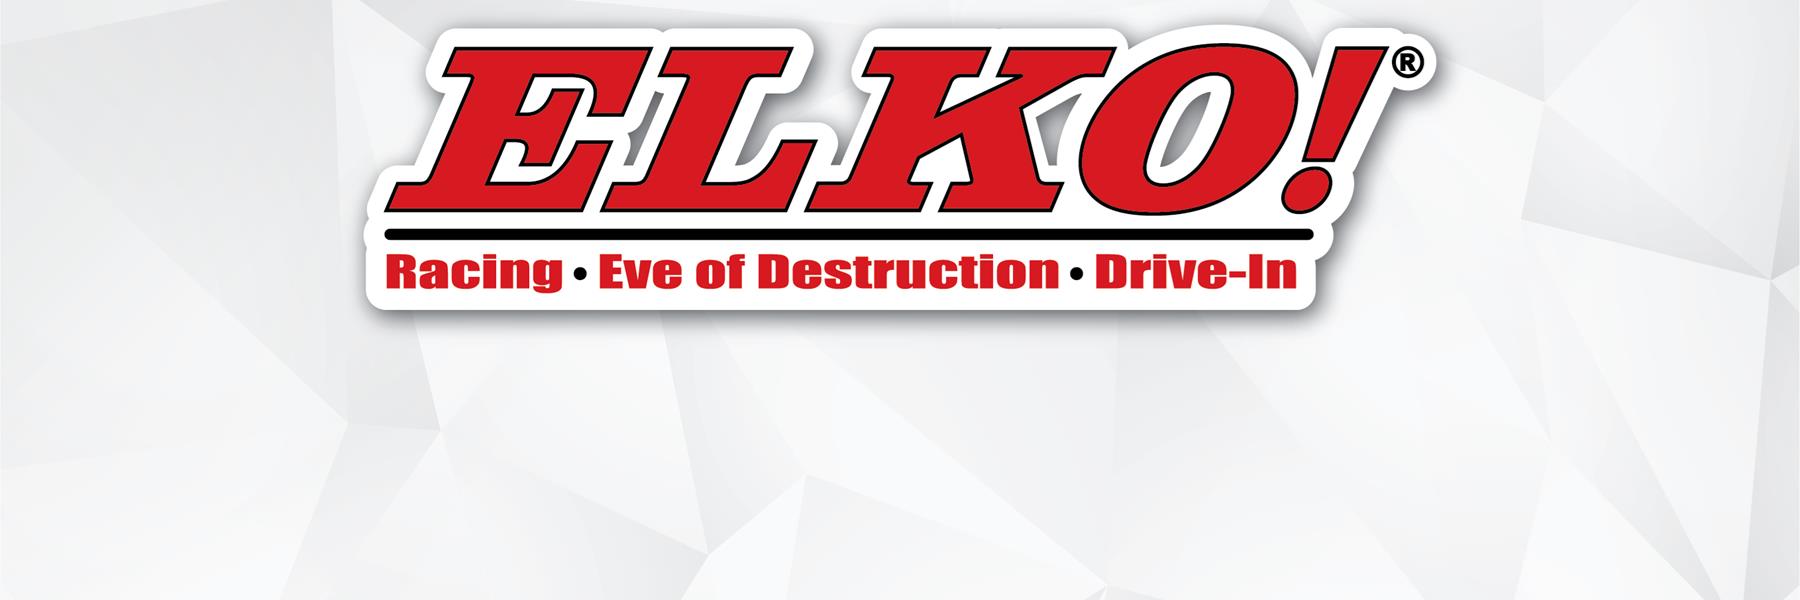 7/24/2010 - Elko Speedway